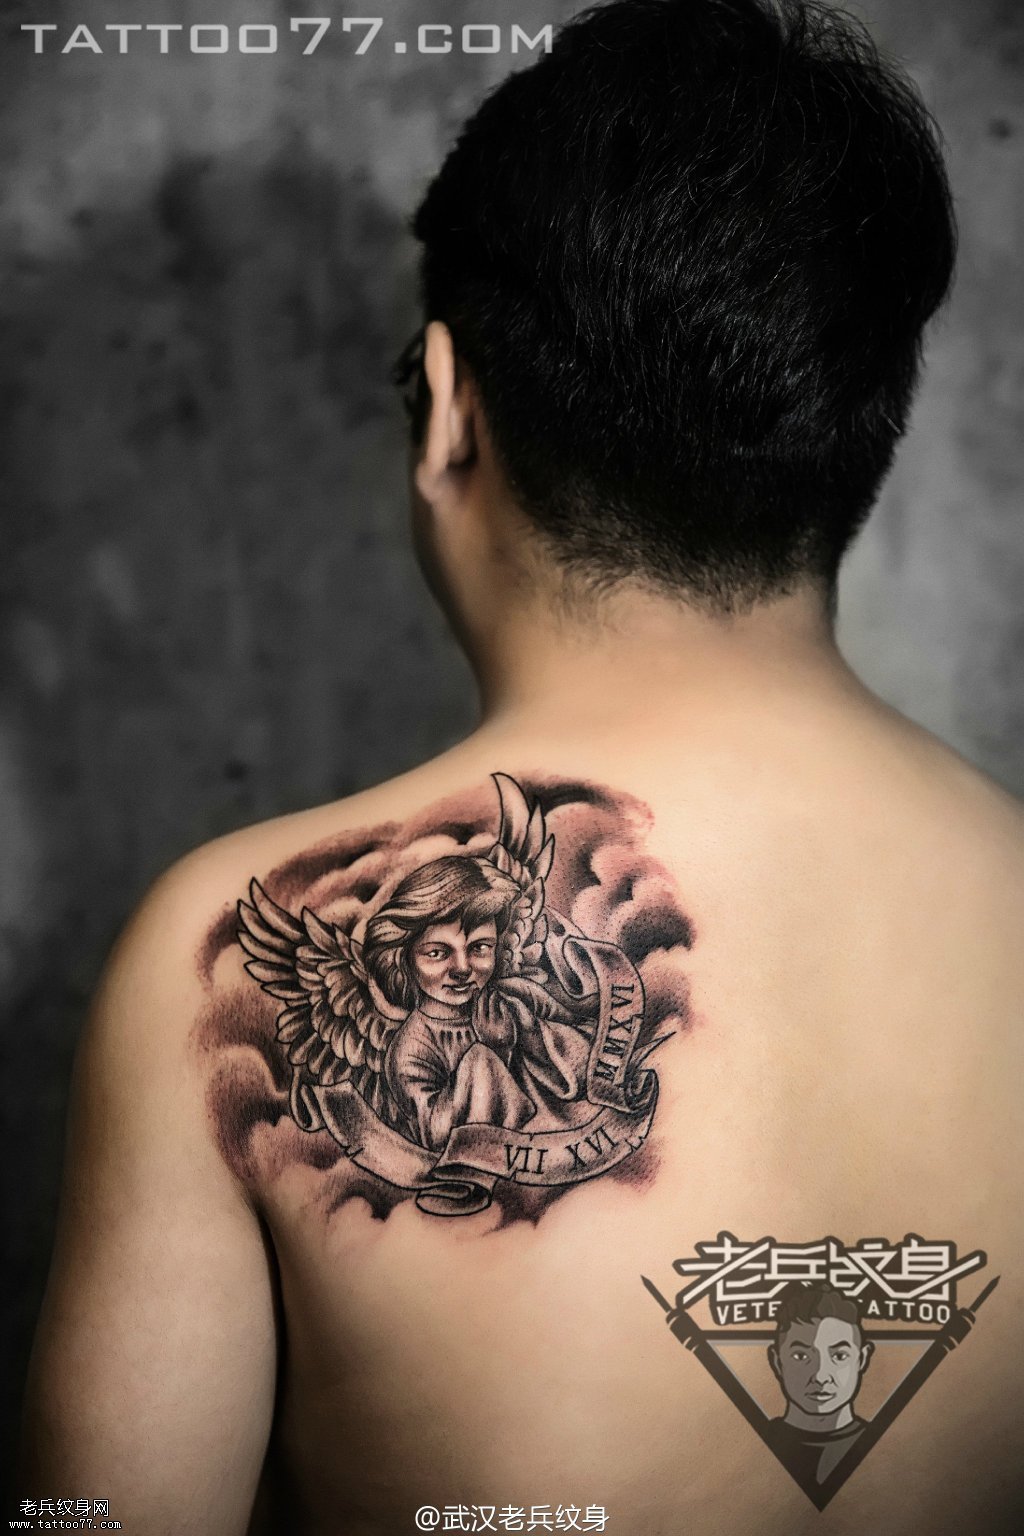 肩胛天使纹身图案作品——武汉纹身店